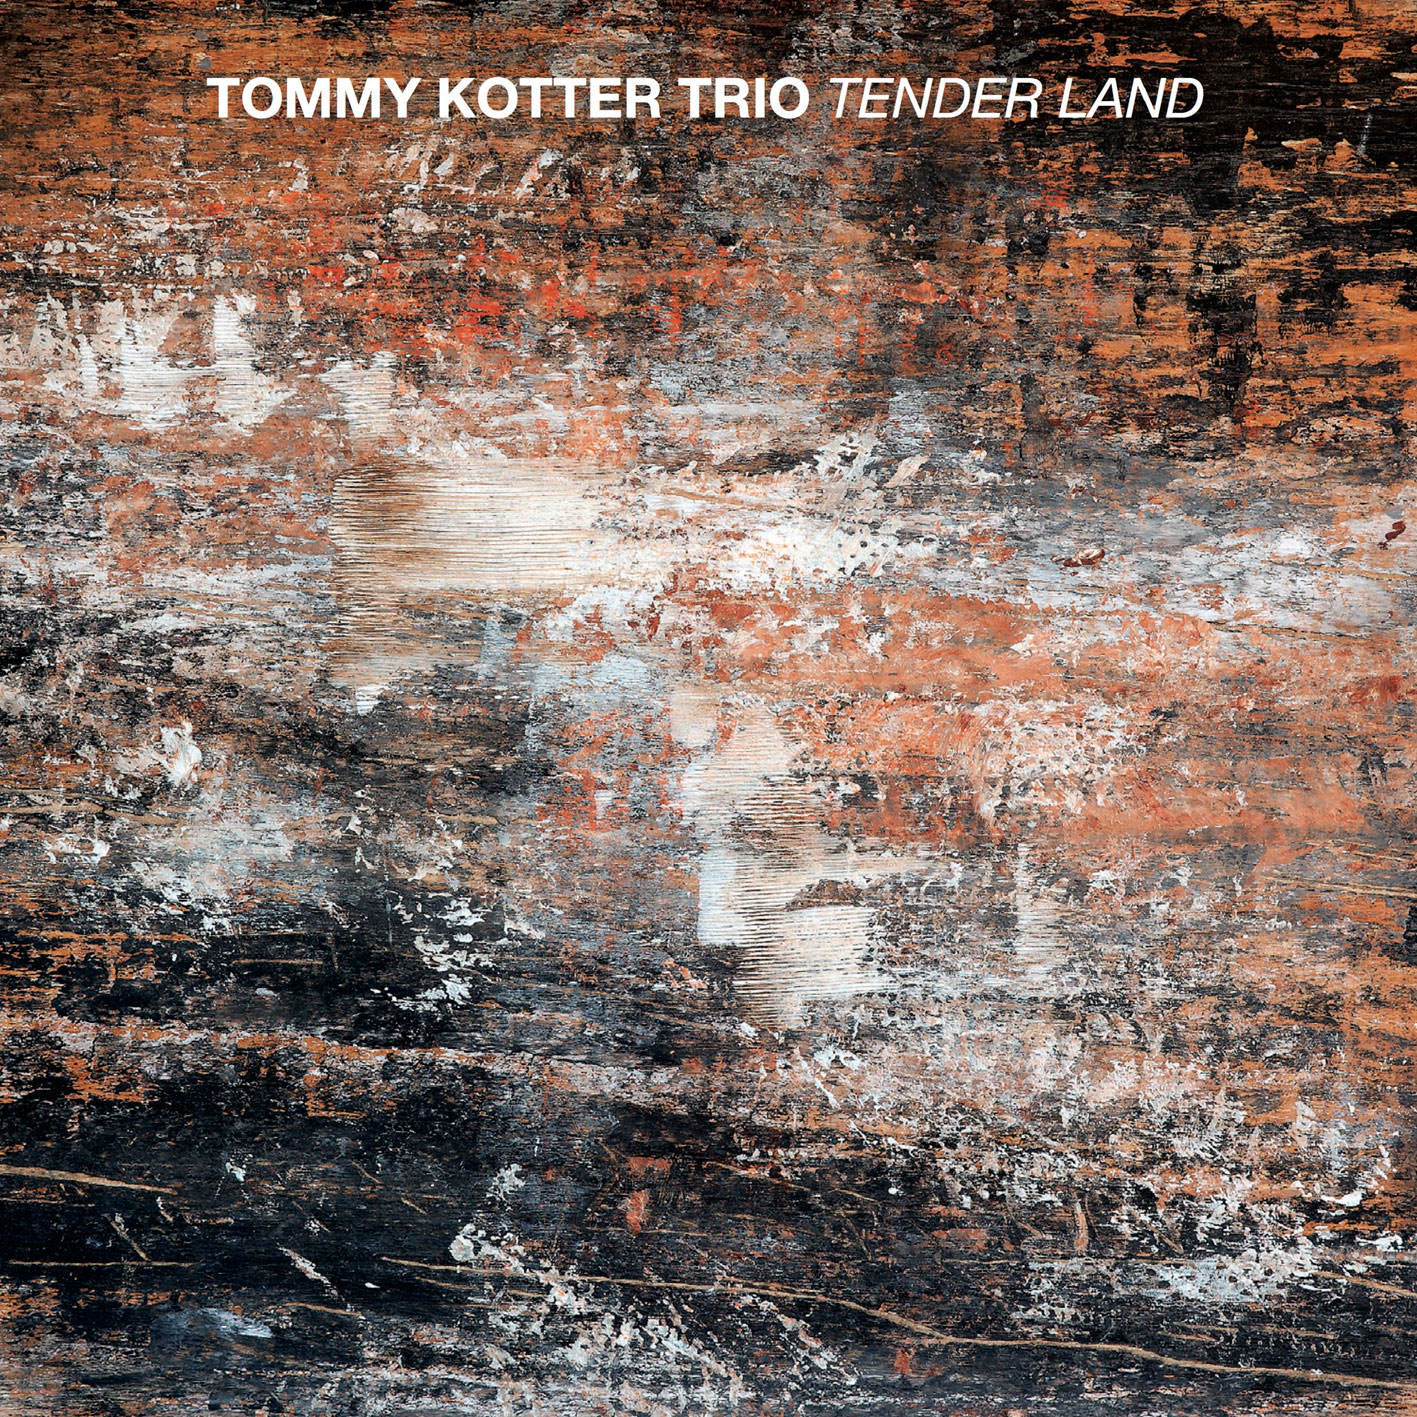 Tommy Kotter Trio - Tender Land (2017) [HDTracks FLAC 24bit/96kHz]